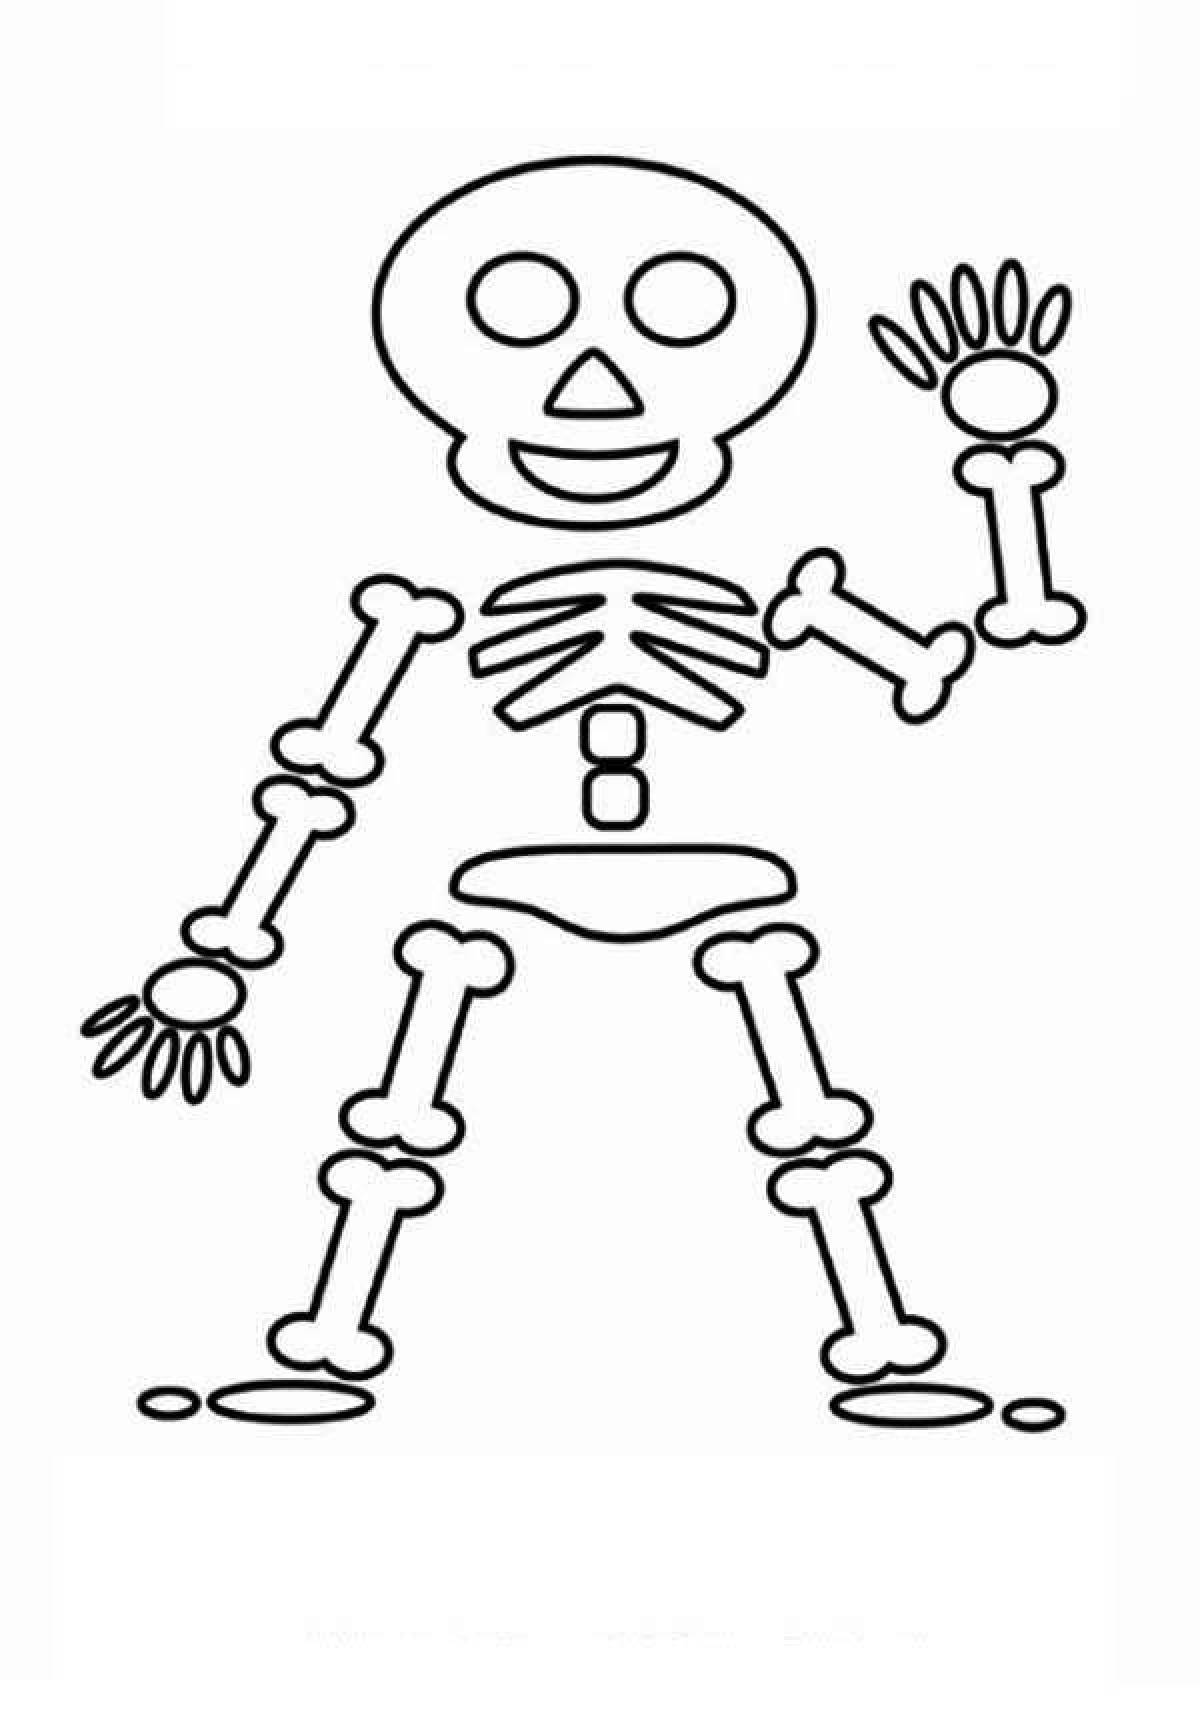 A striking human skeleton coloring page